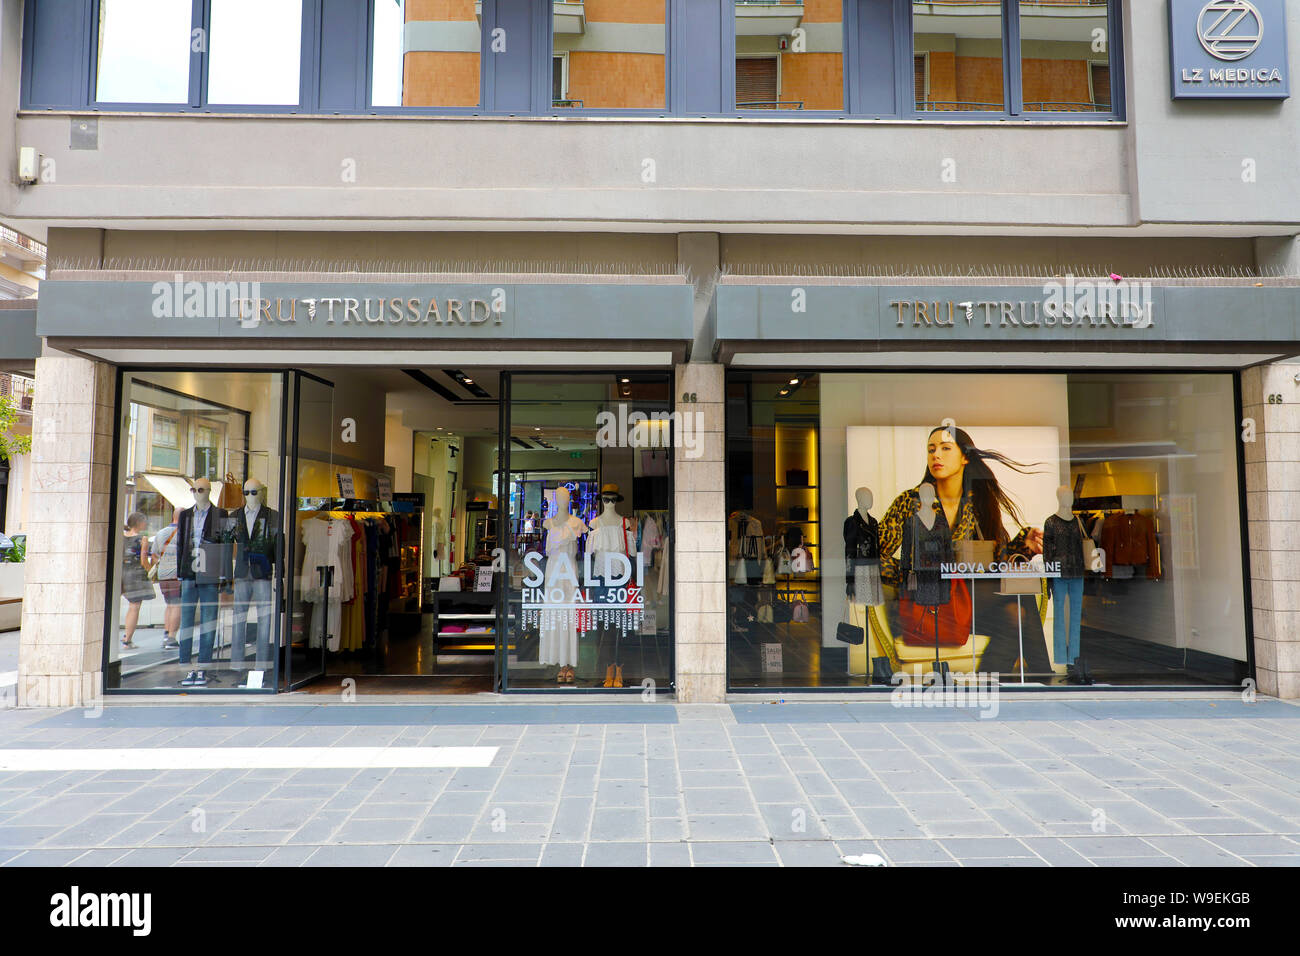 BARI, Italia - 30 luglio 2019: Tru Trussardi store. Trussardi è casa di moda italiana fondata nel 1911. Tru Trussardi è la casa è più facile raccogliere Foto Stock